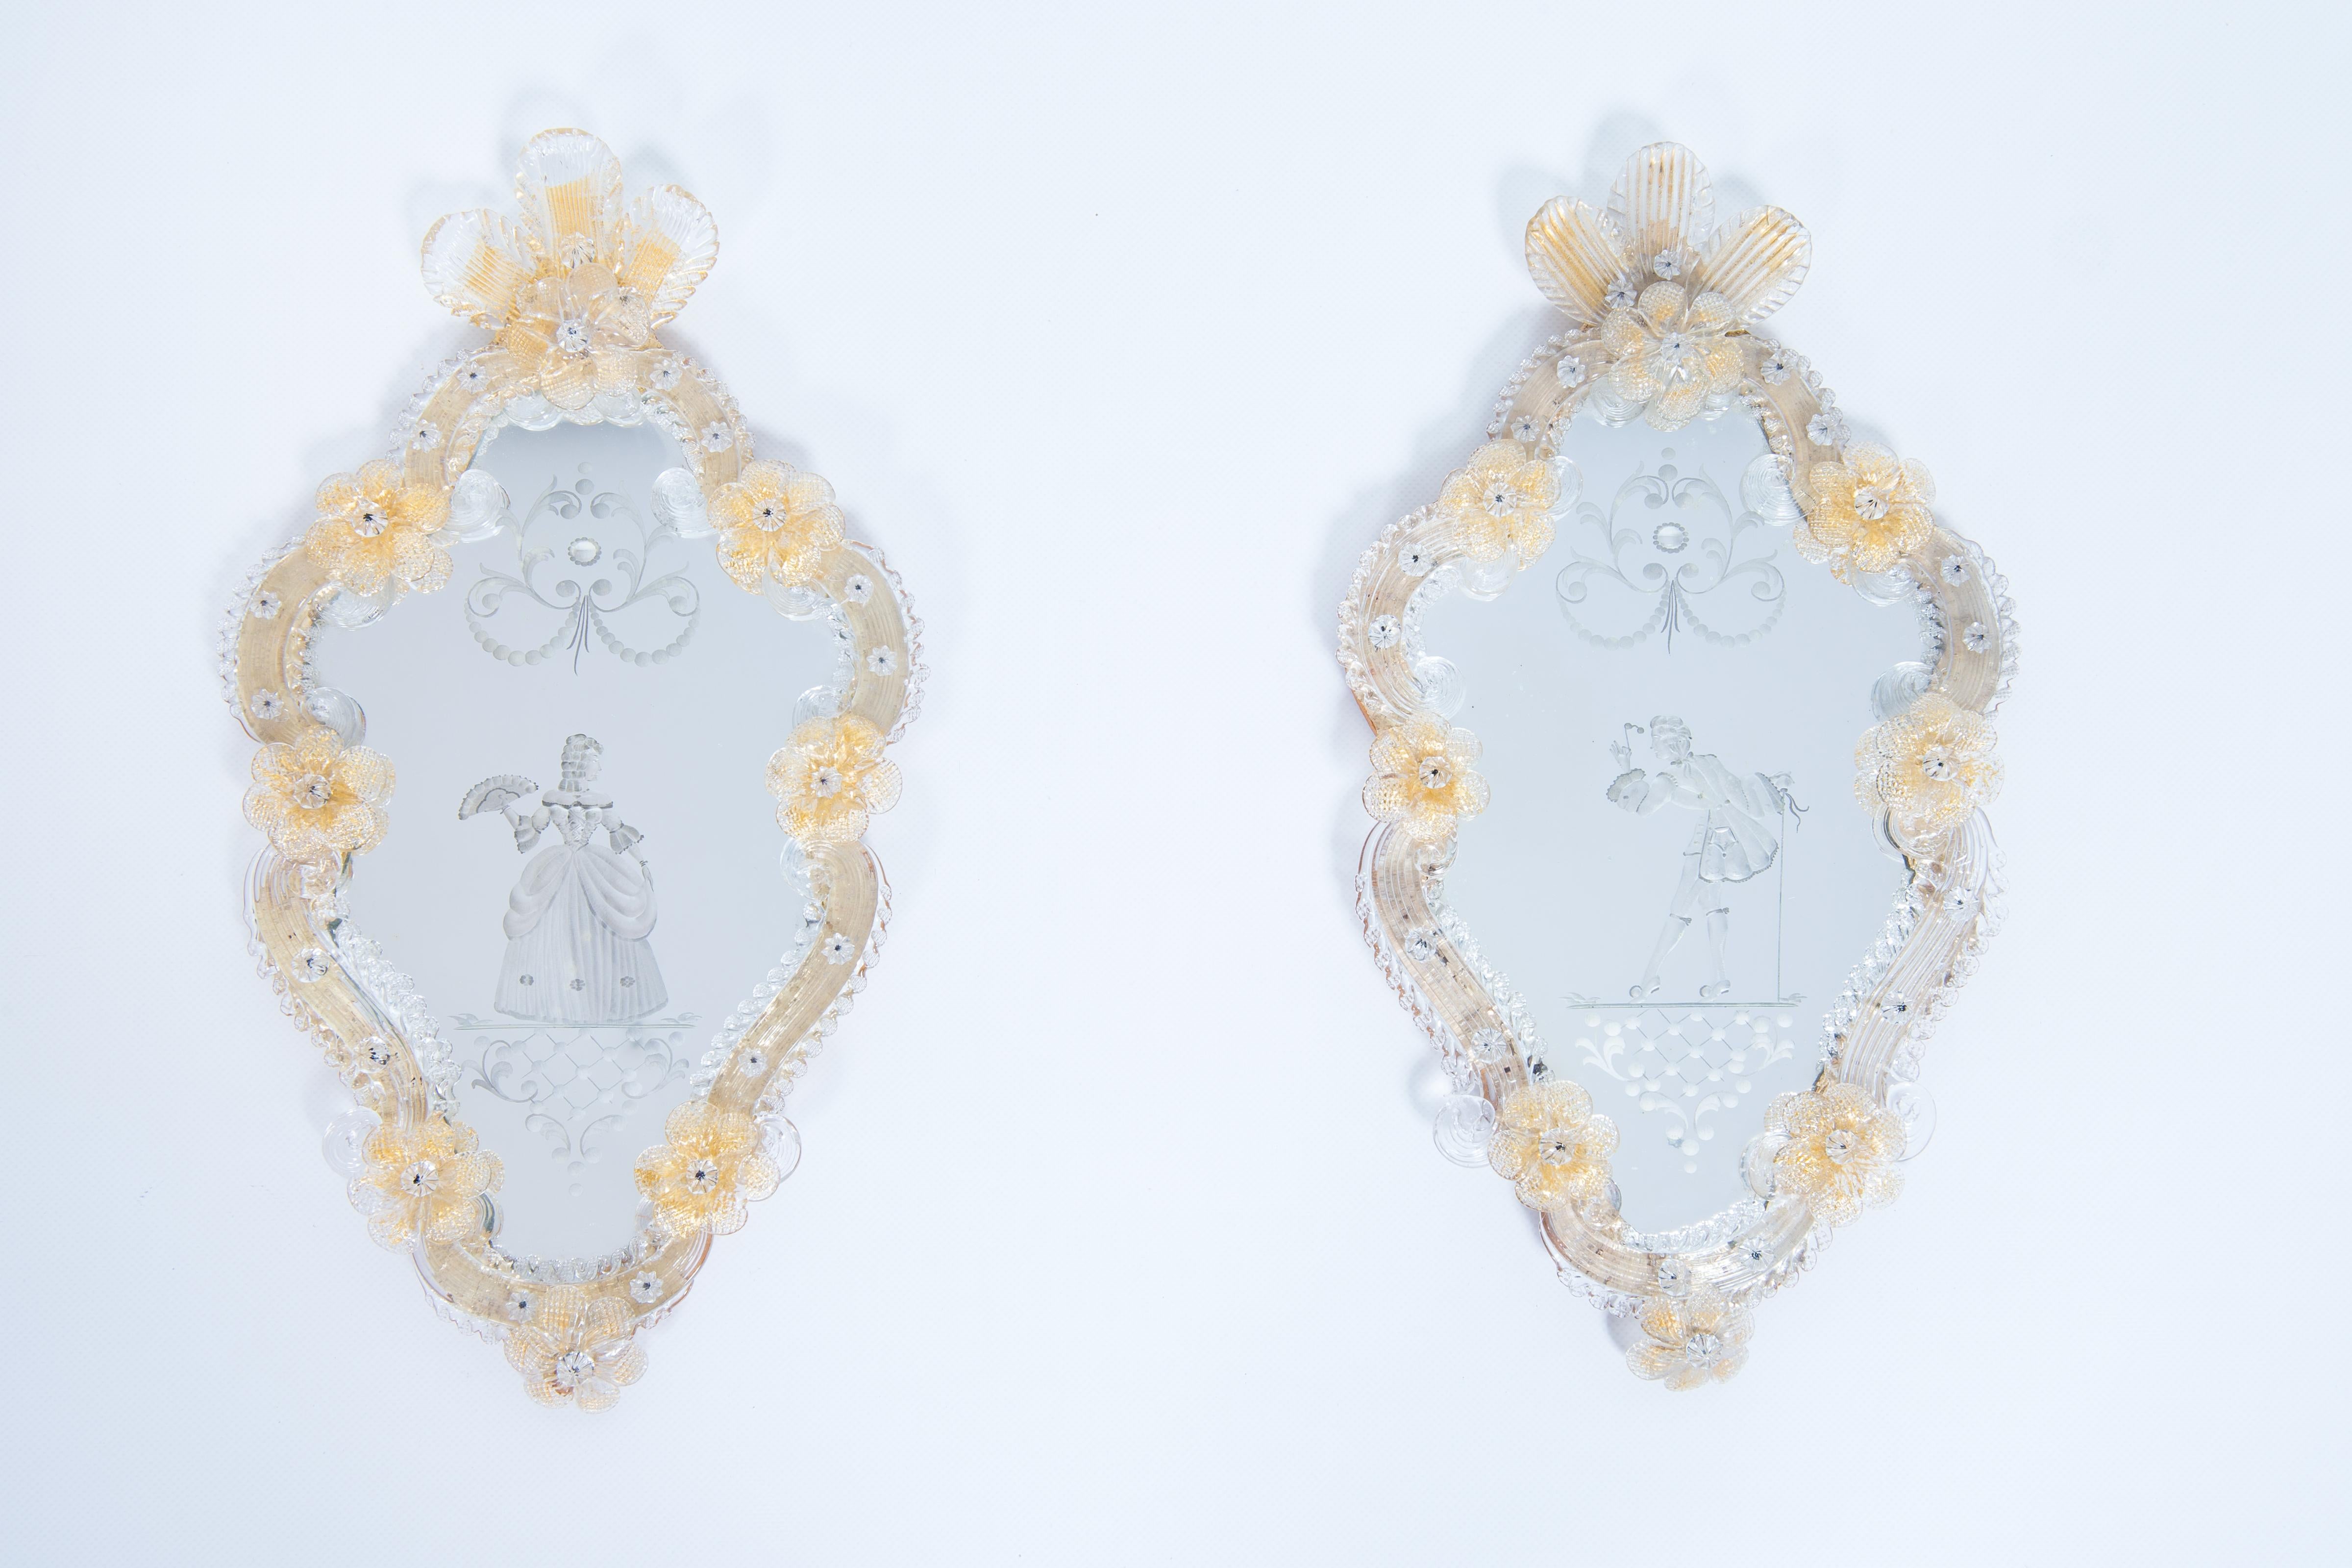 Venetian Sir & Lady Paar graviert Murano Glas Spiegel Gold Finishes 1900s

Dieses Paar Spiegel aus Murano-Glas, das um 1900 von venezianischen Glasmachermeistern in reiner Handarbeit hergestellt wurde, ist ein edles Möbelstück, das von der Eleganz